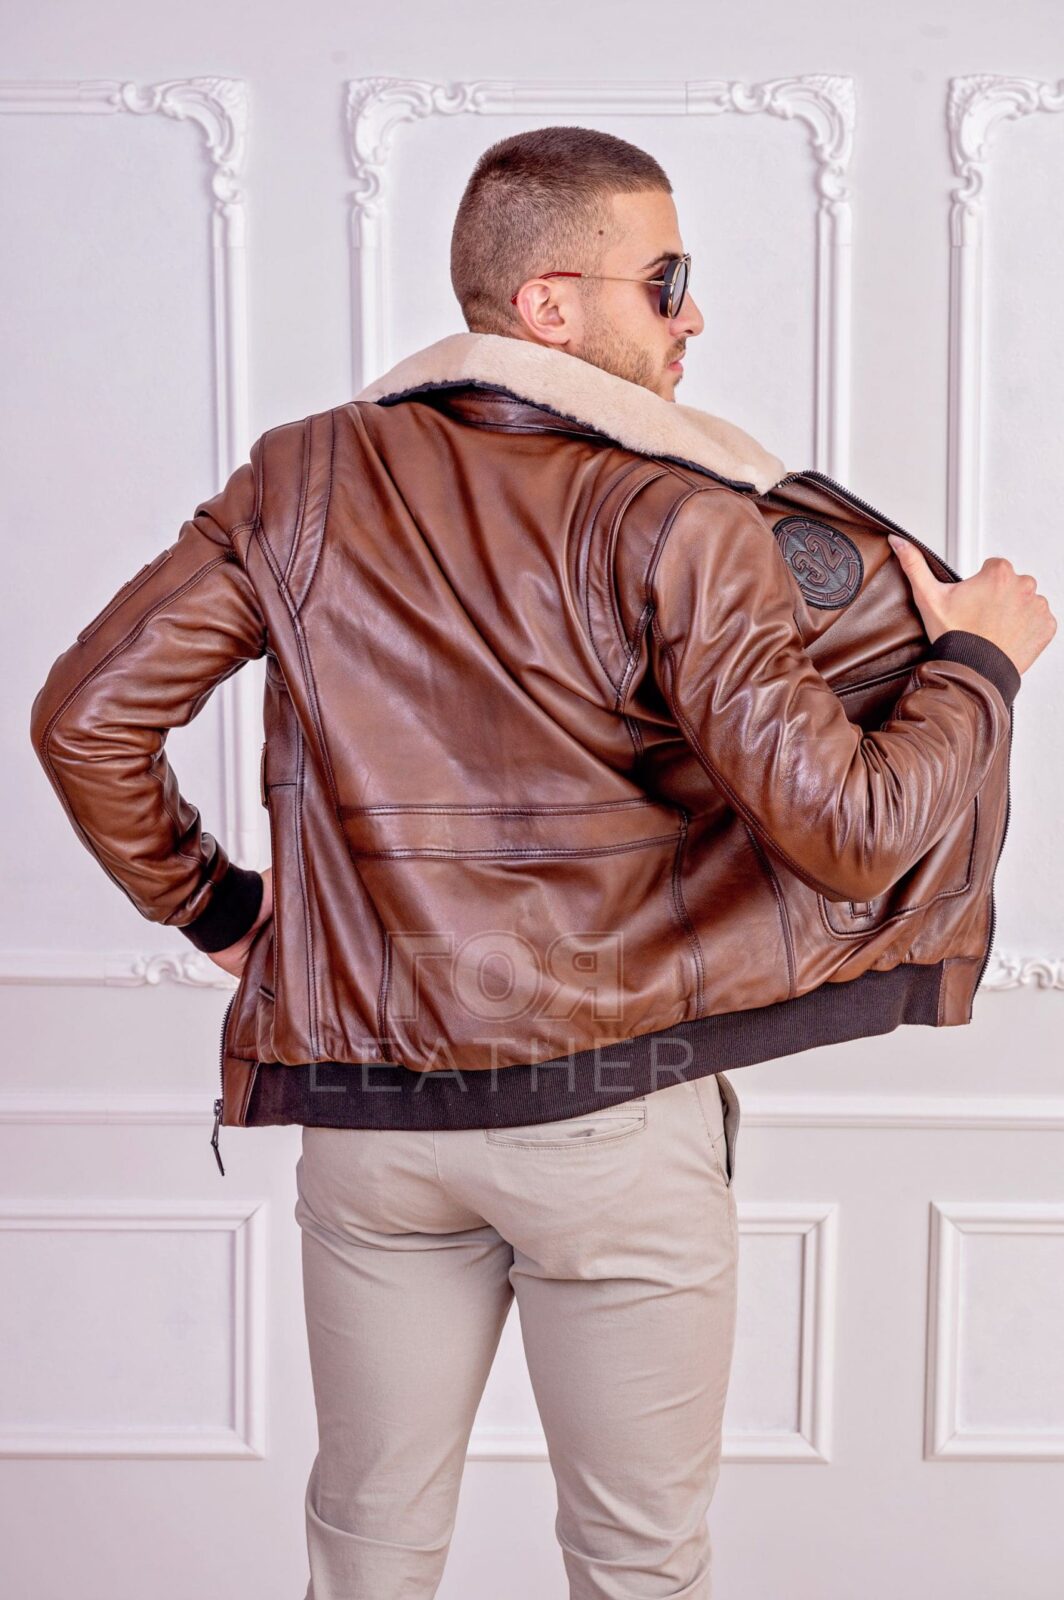 Пилотско яке бомбър- антик.Пилотско кожено яке бомбър от 100% естествена кожа. Нов оригинален модел мъжко кожено яке от ГОЯ Leather колекция 2021 г.